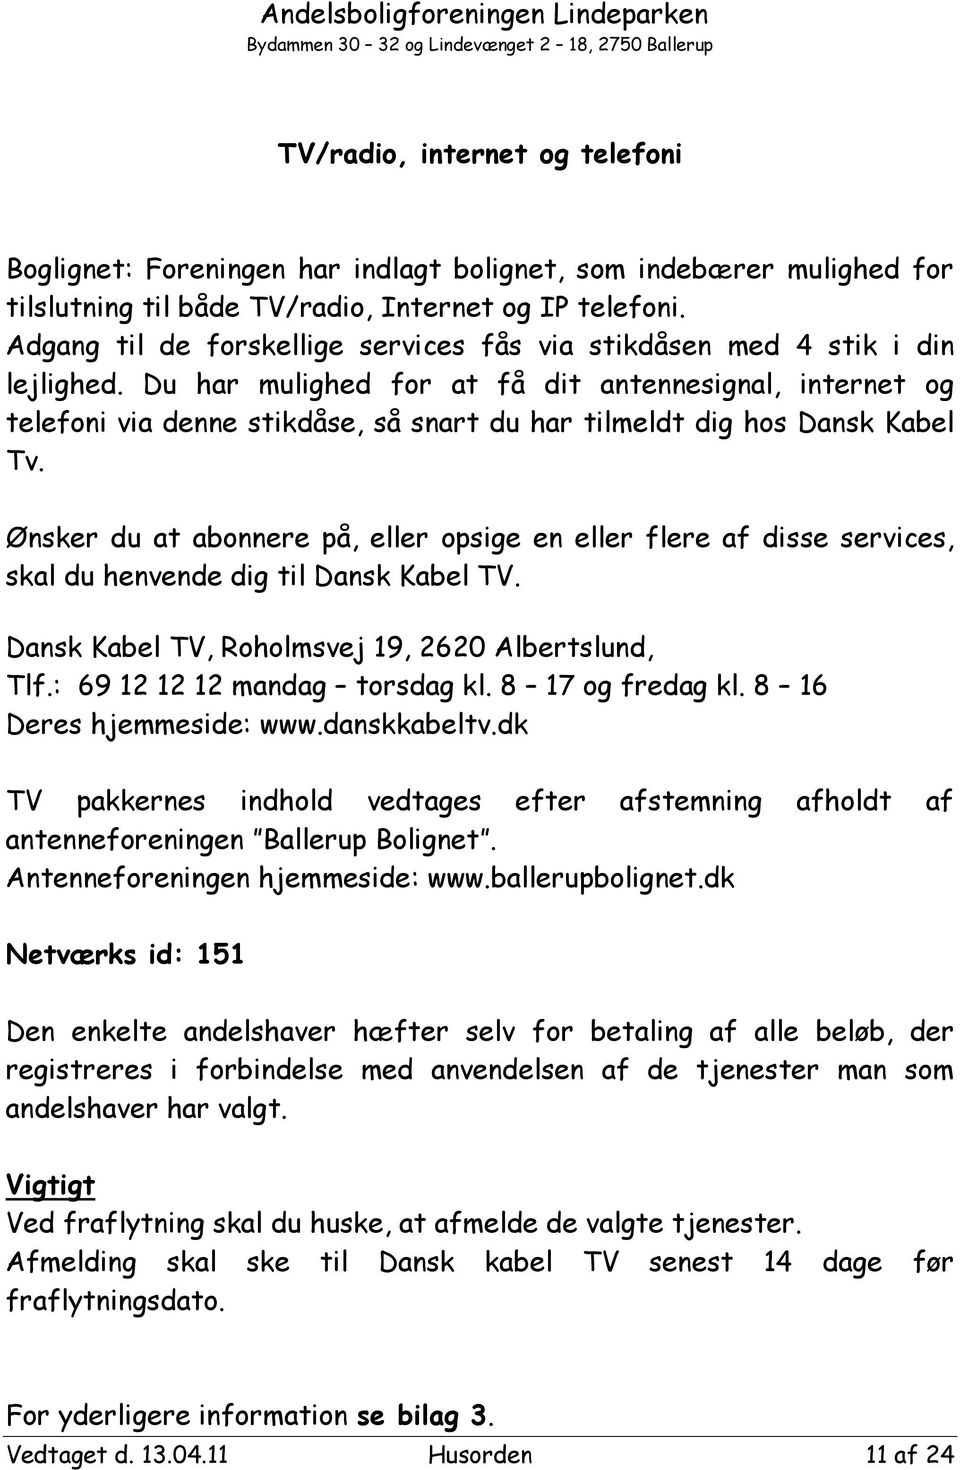 بطلاقة مؤلم براءة الإختراع dansk kabel tv netværks id varde -  solarireland2020.com